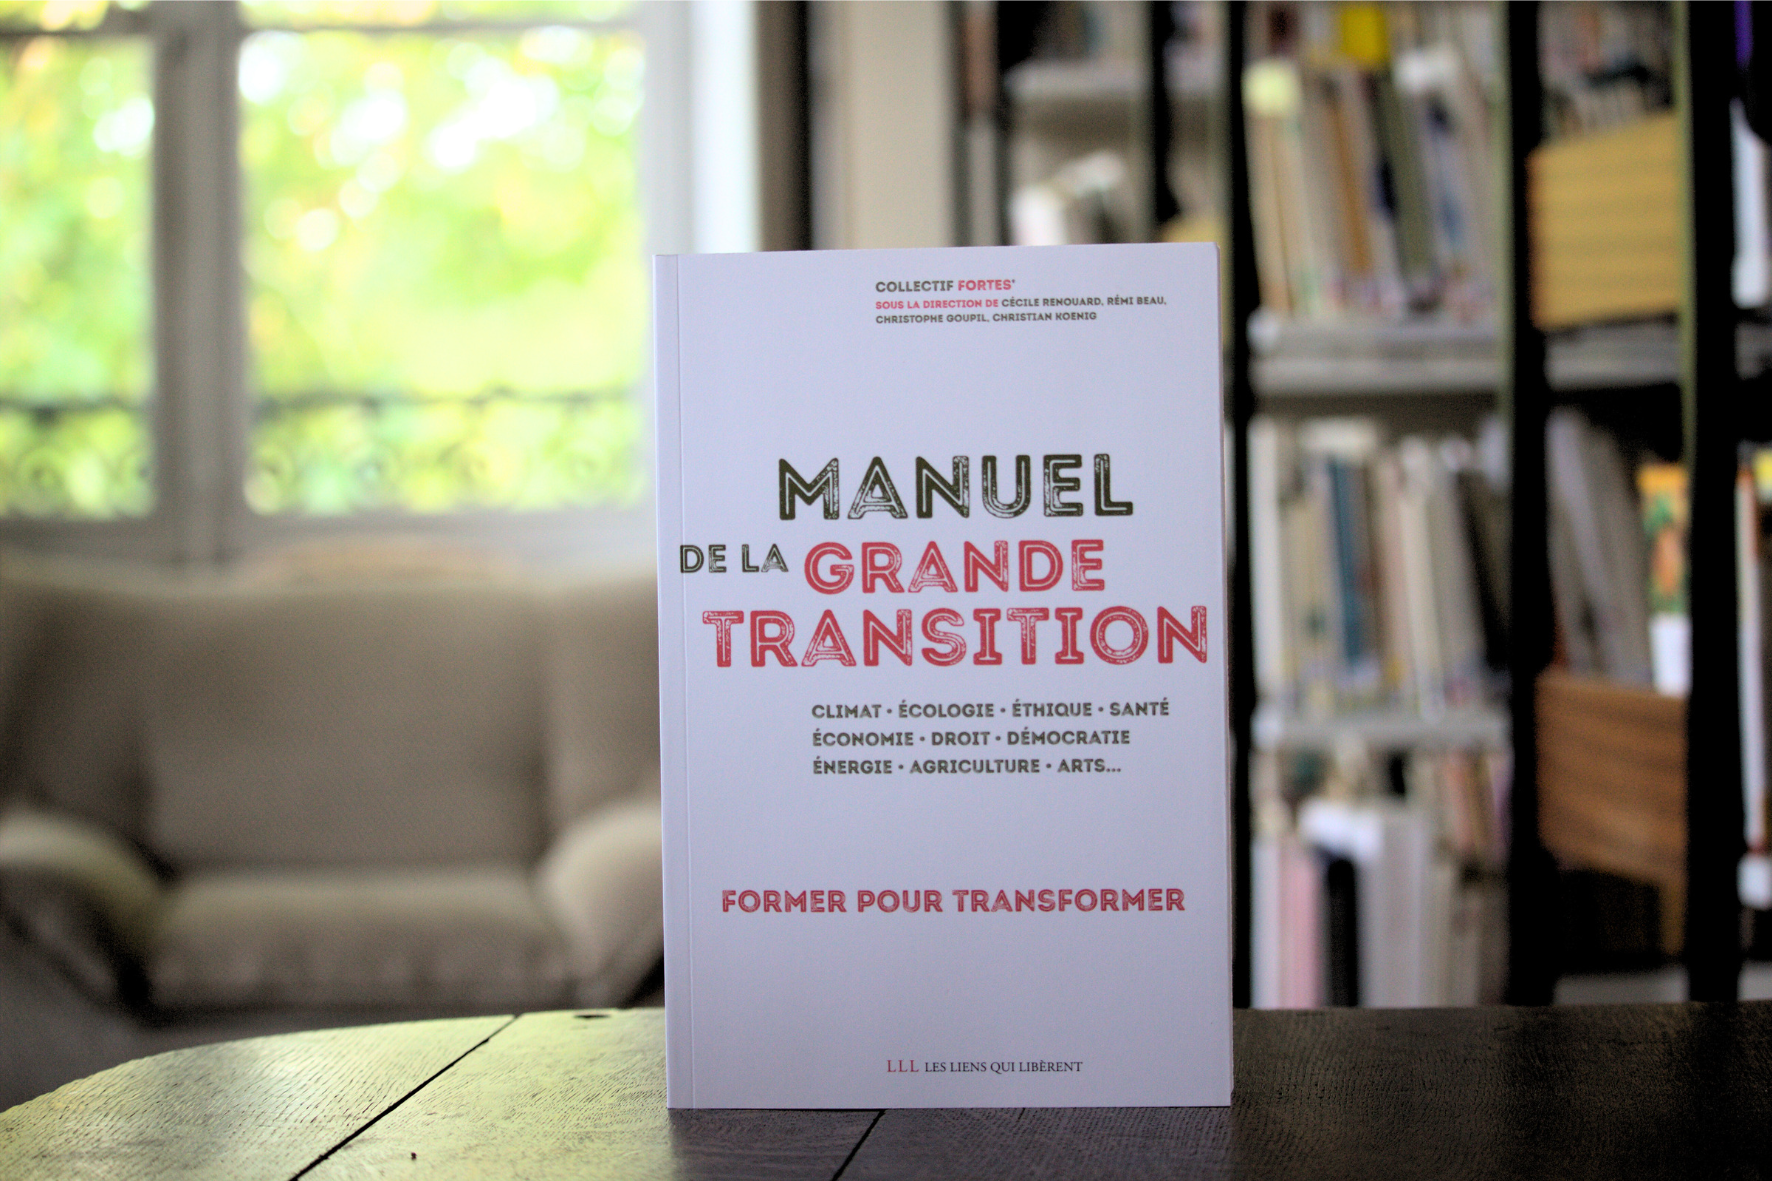 Manuel de la Grande Transition